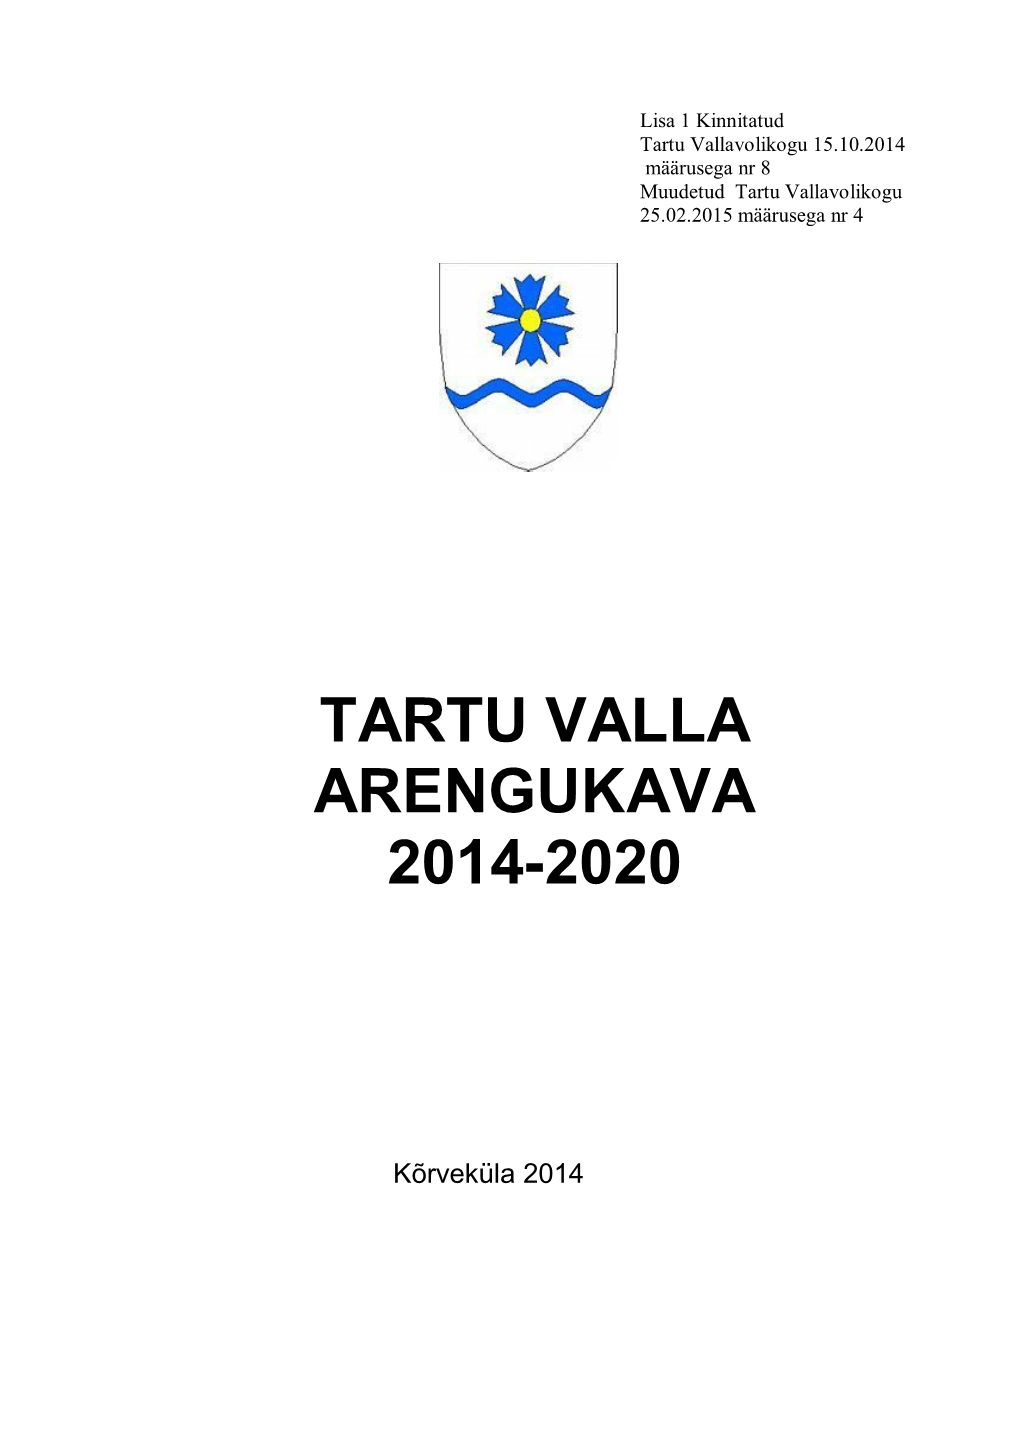 Tartu Valla Arengukava 2014-2020